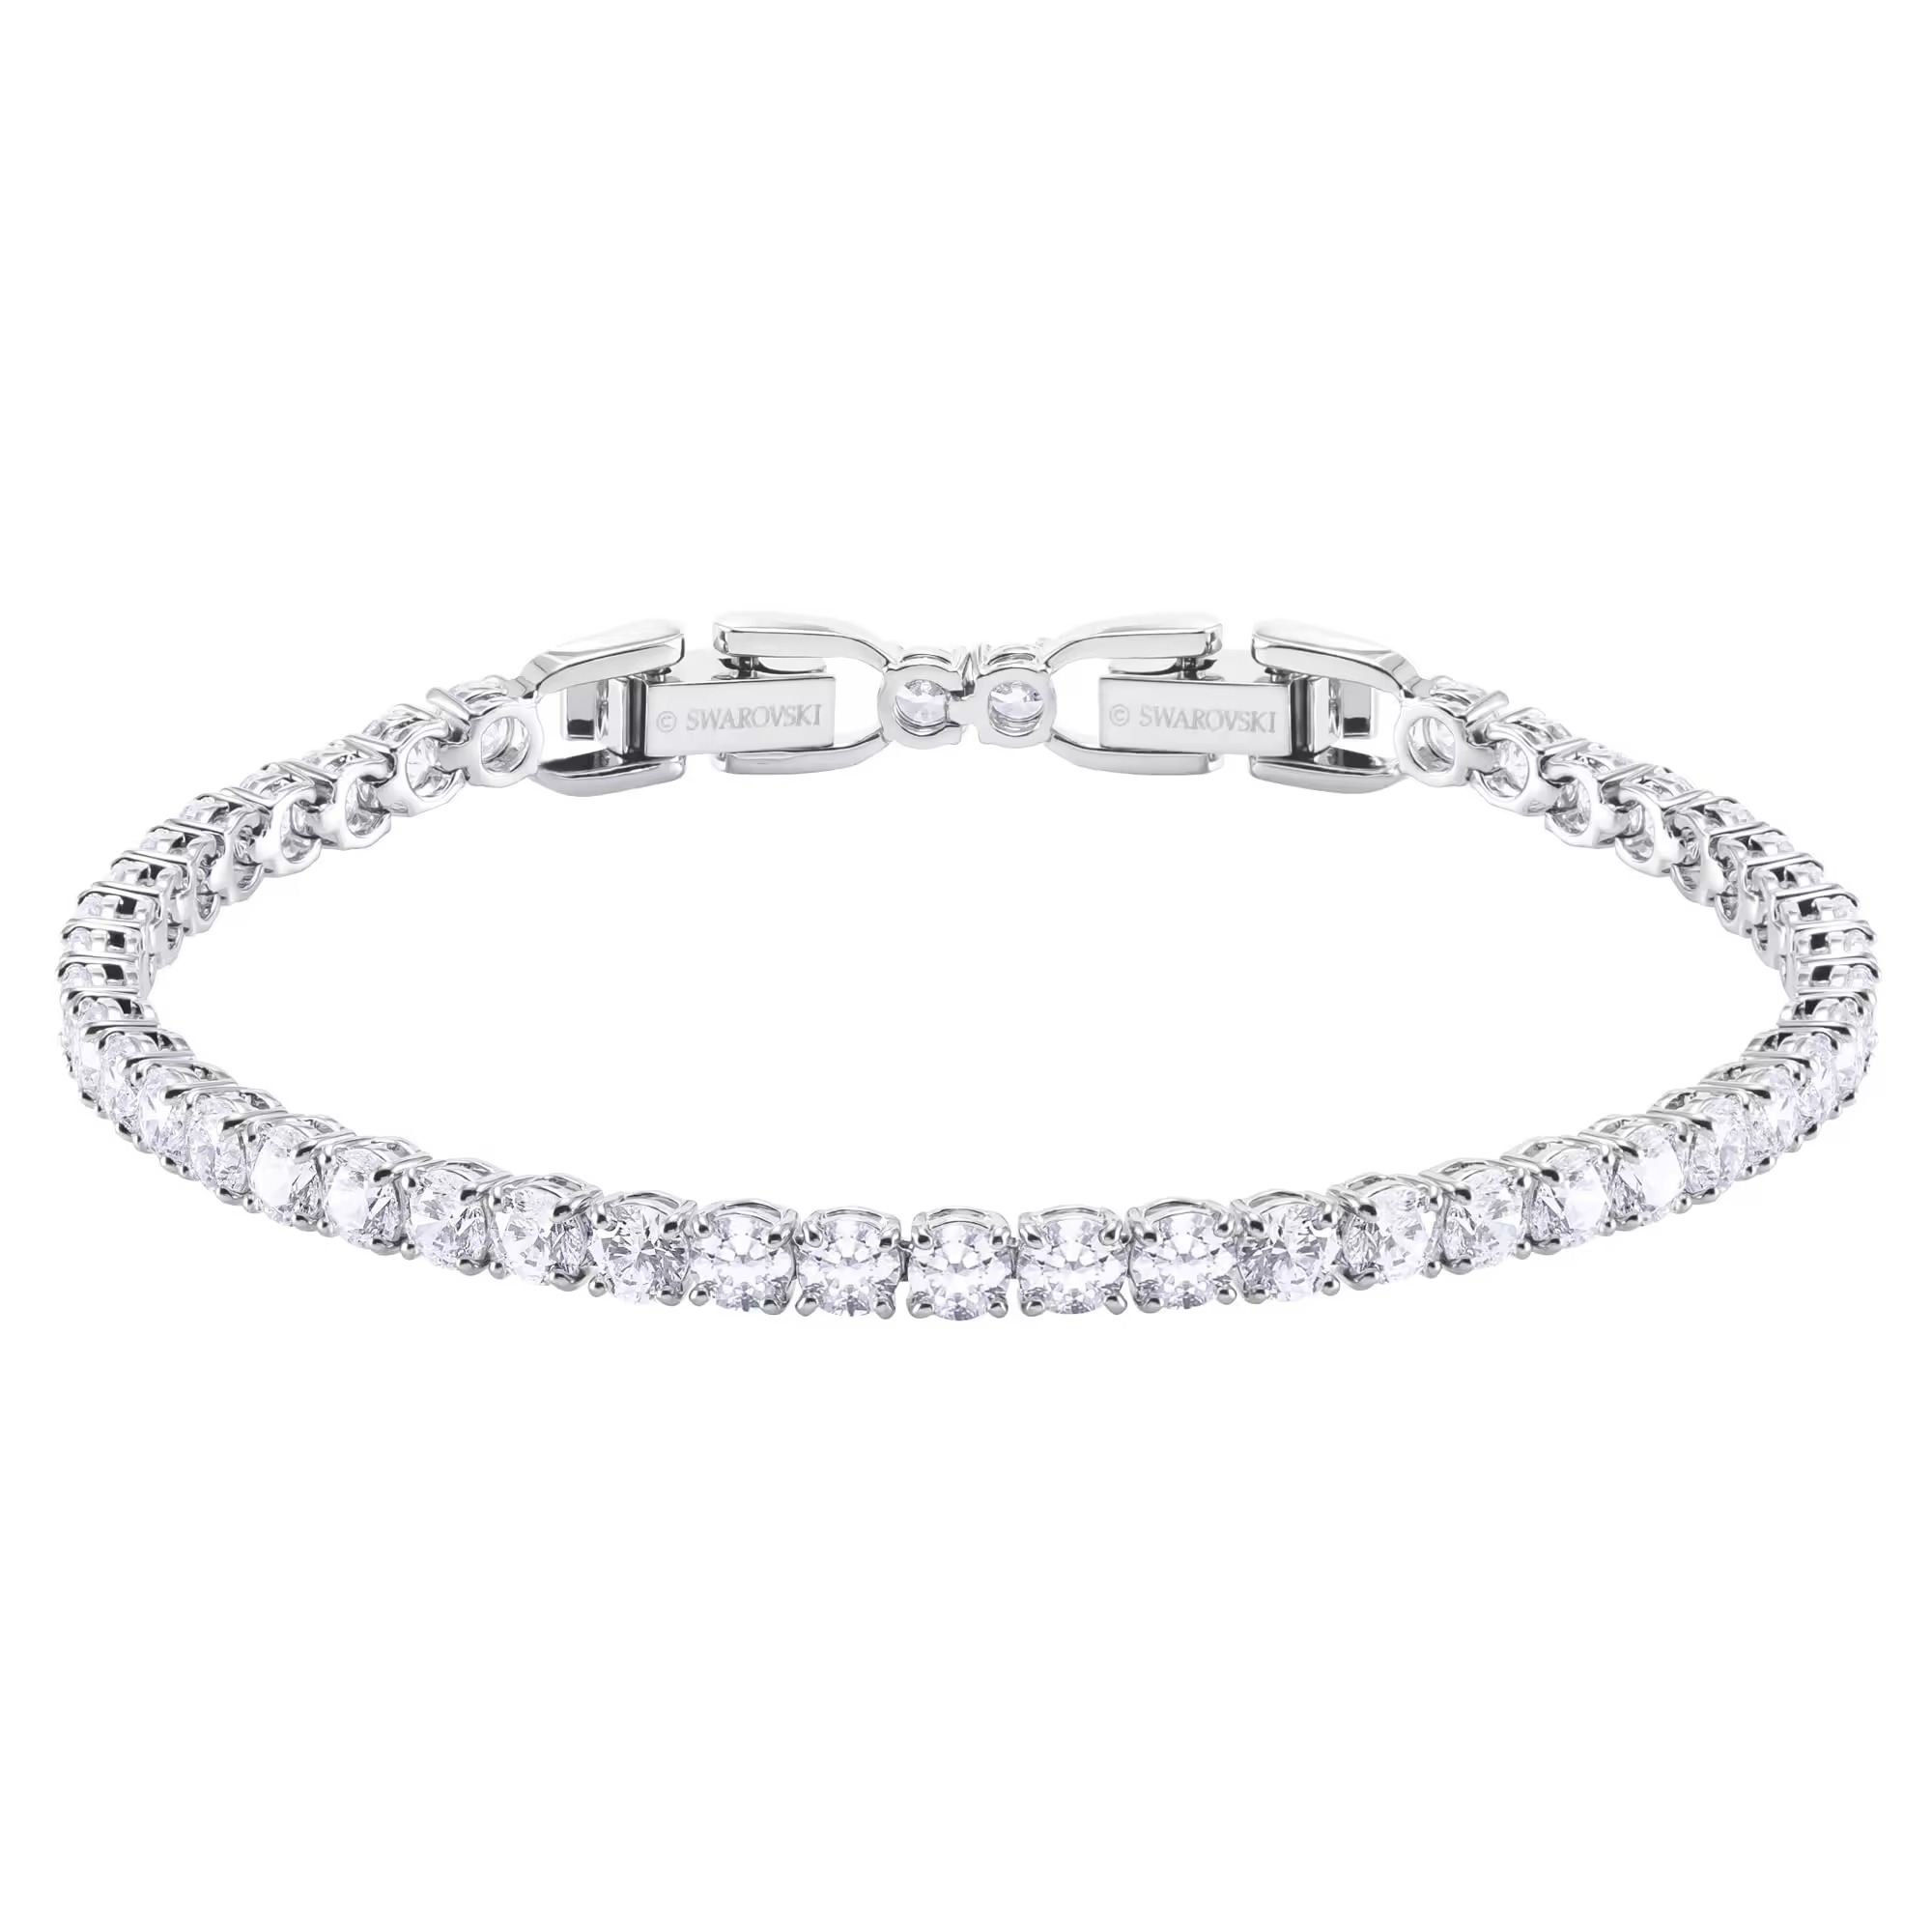 Stunning White Crystal Deluxe Tennis Bracelet for Women